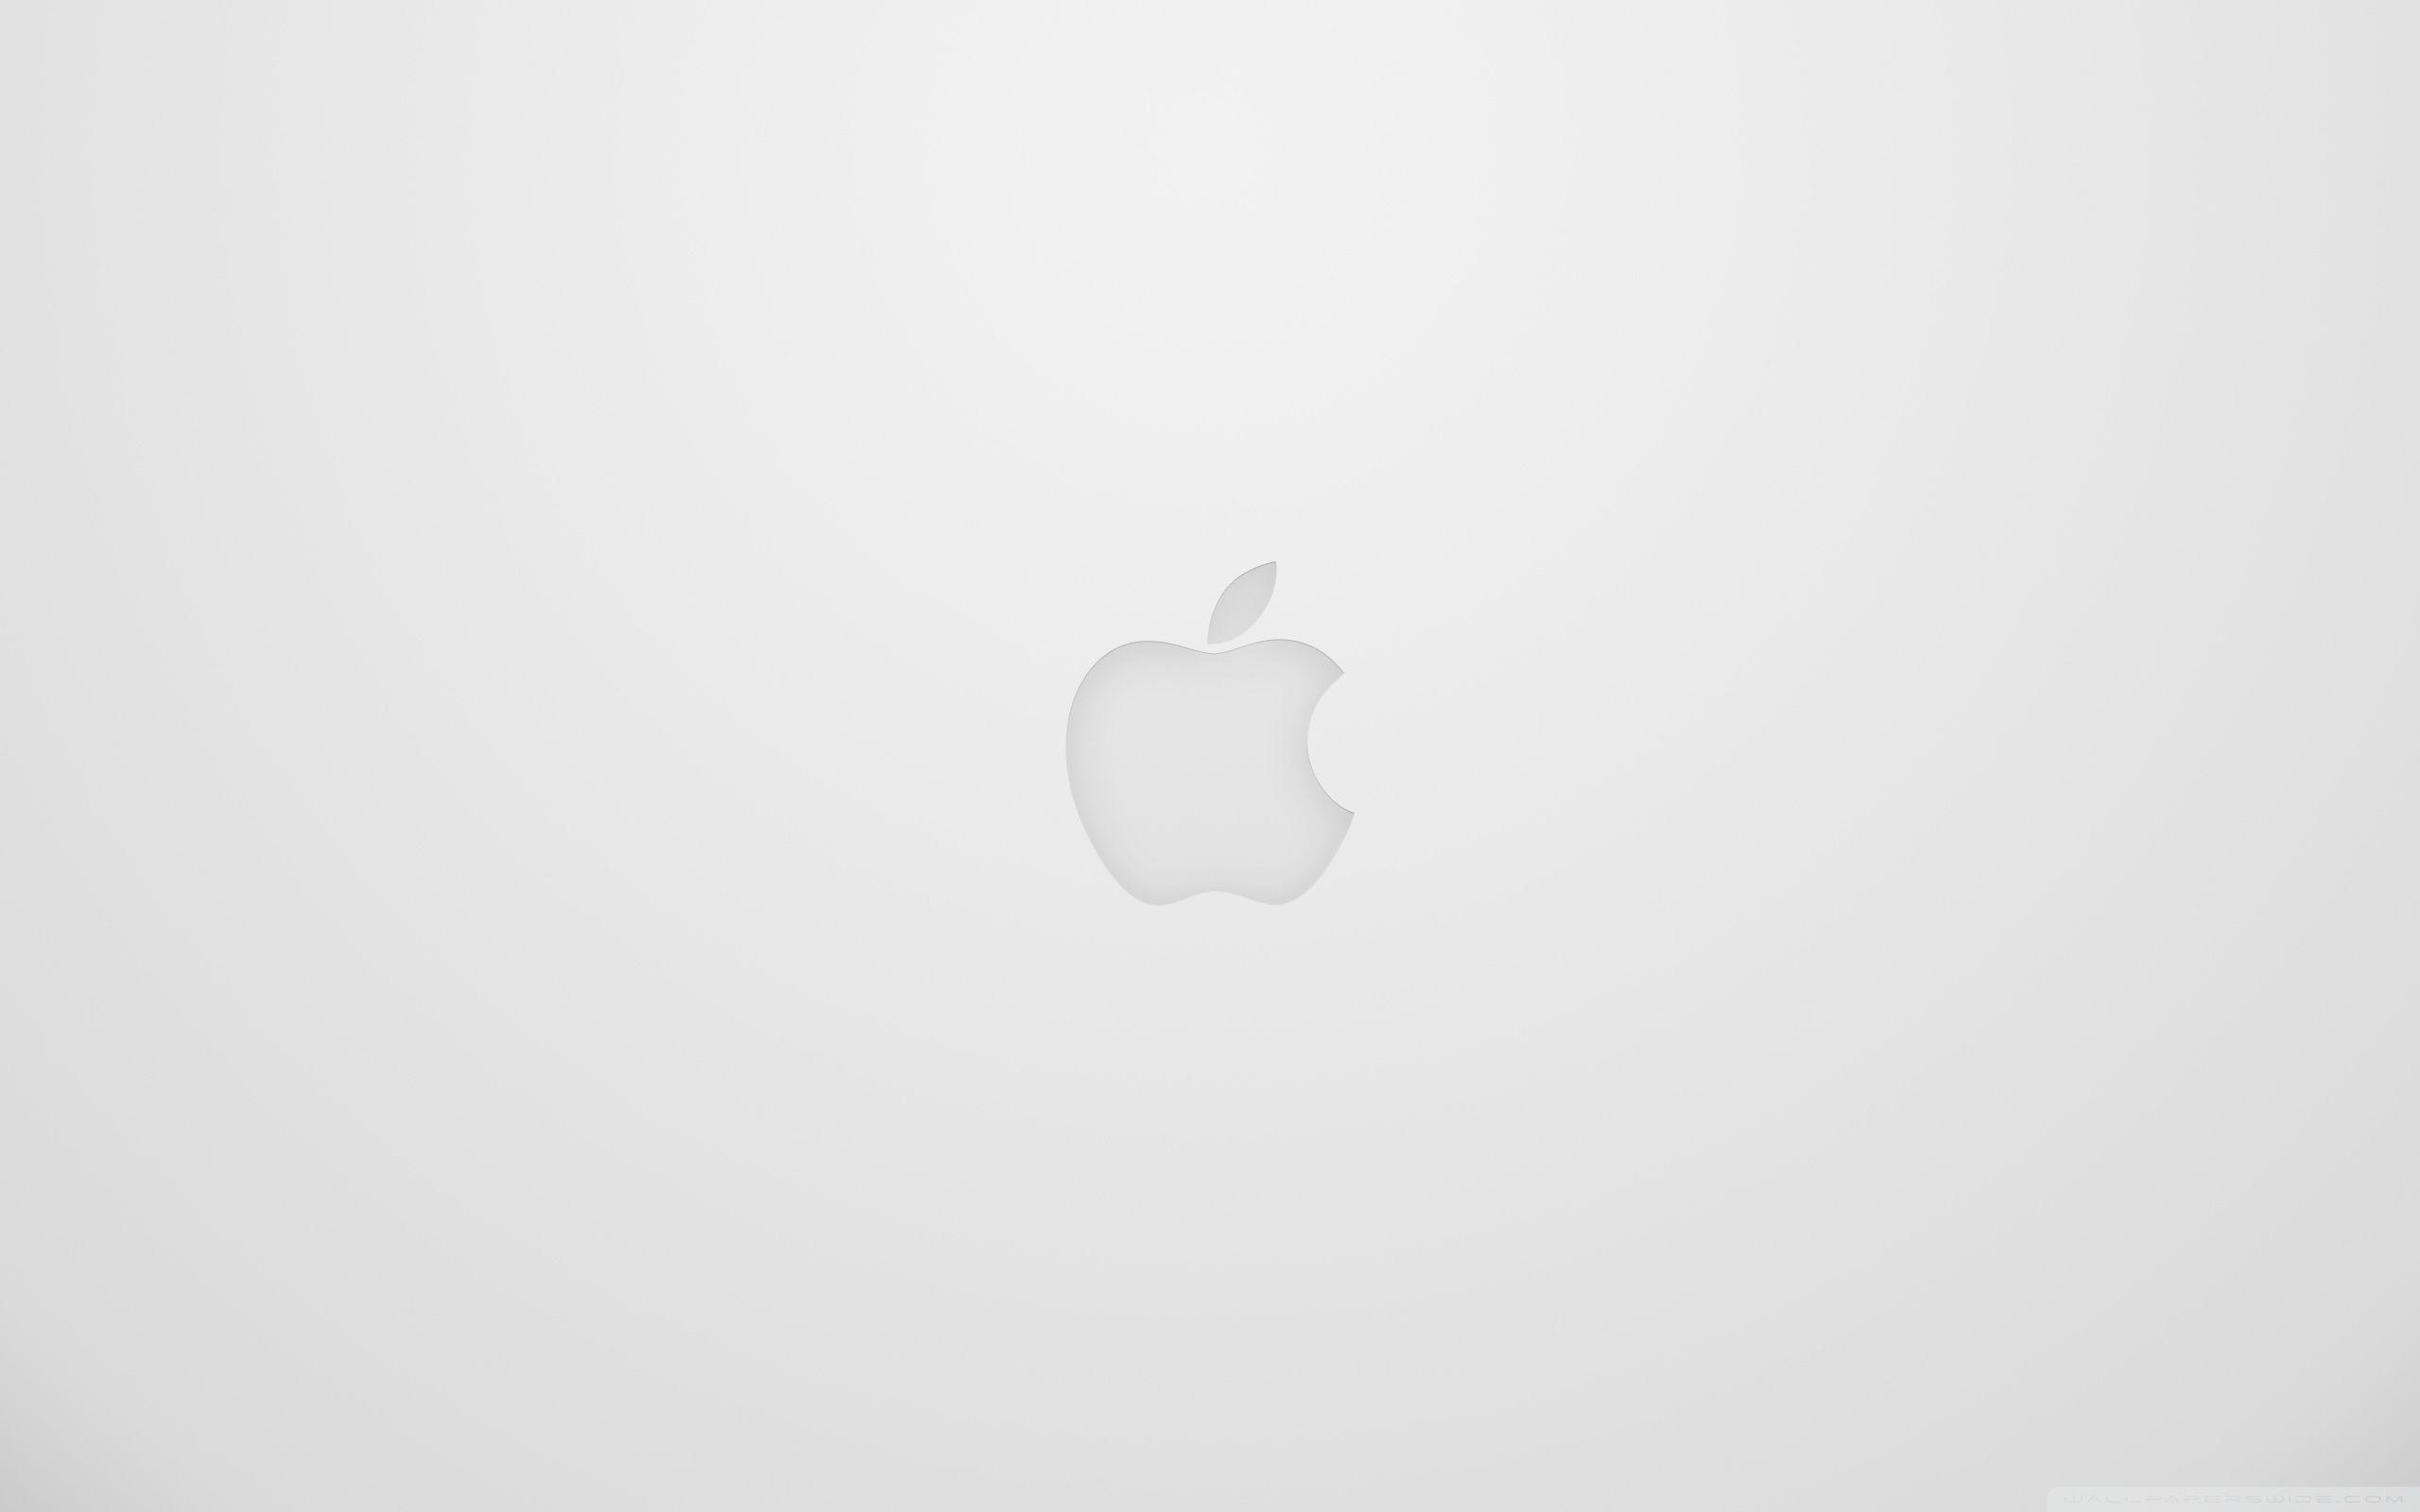 Apple Logo White ❤ 4K HD Desktop Wallpaper for 4K Ultra HD TV